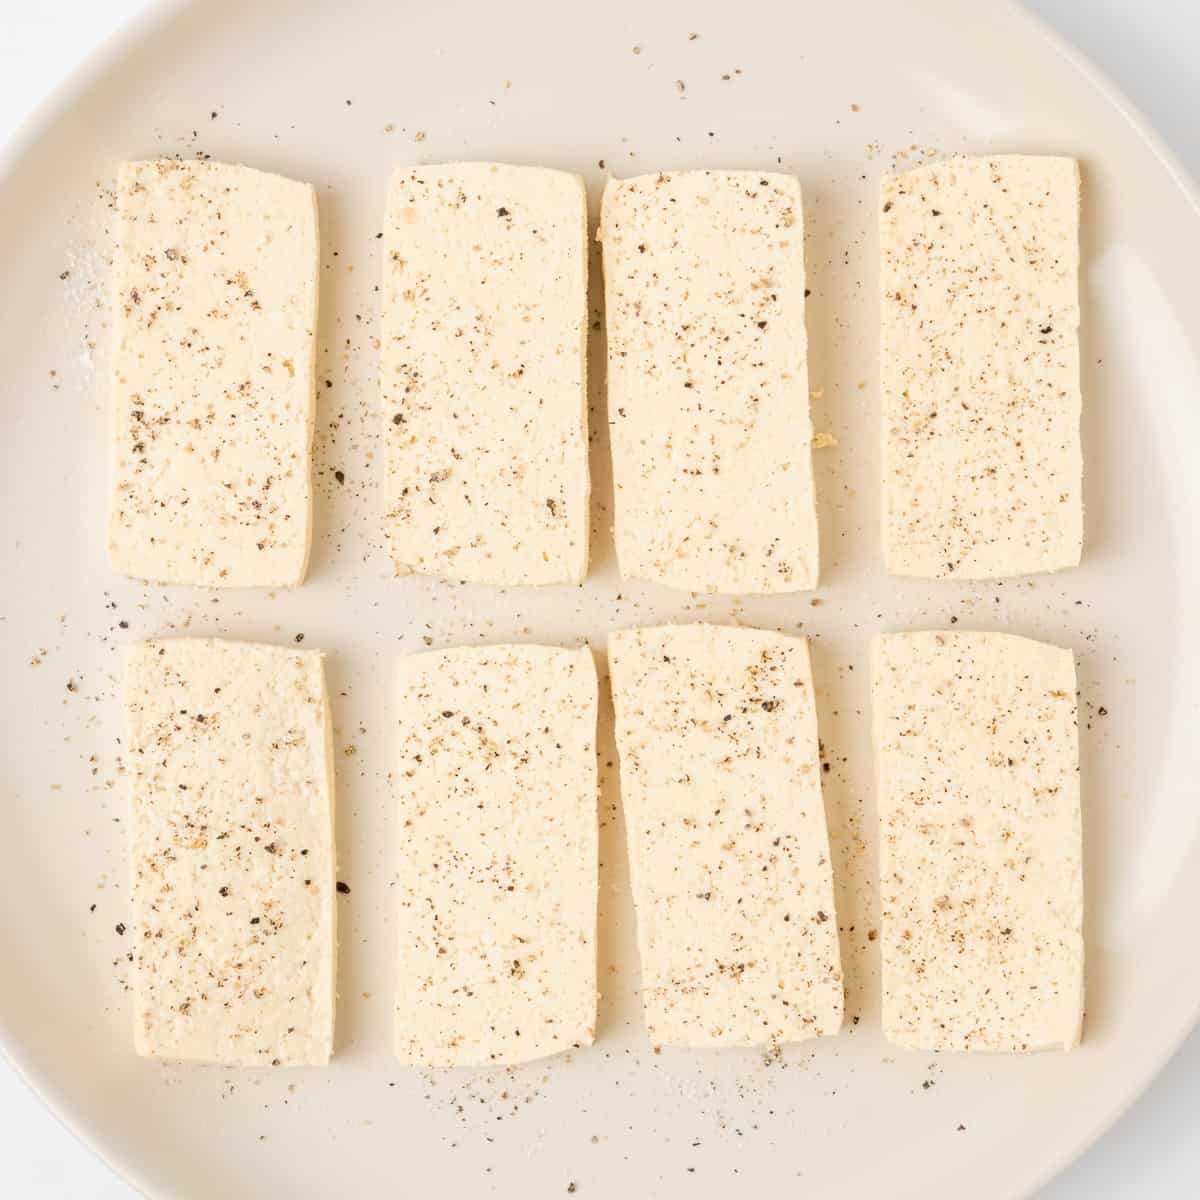 Seasoned slices of tofu.